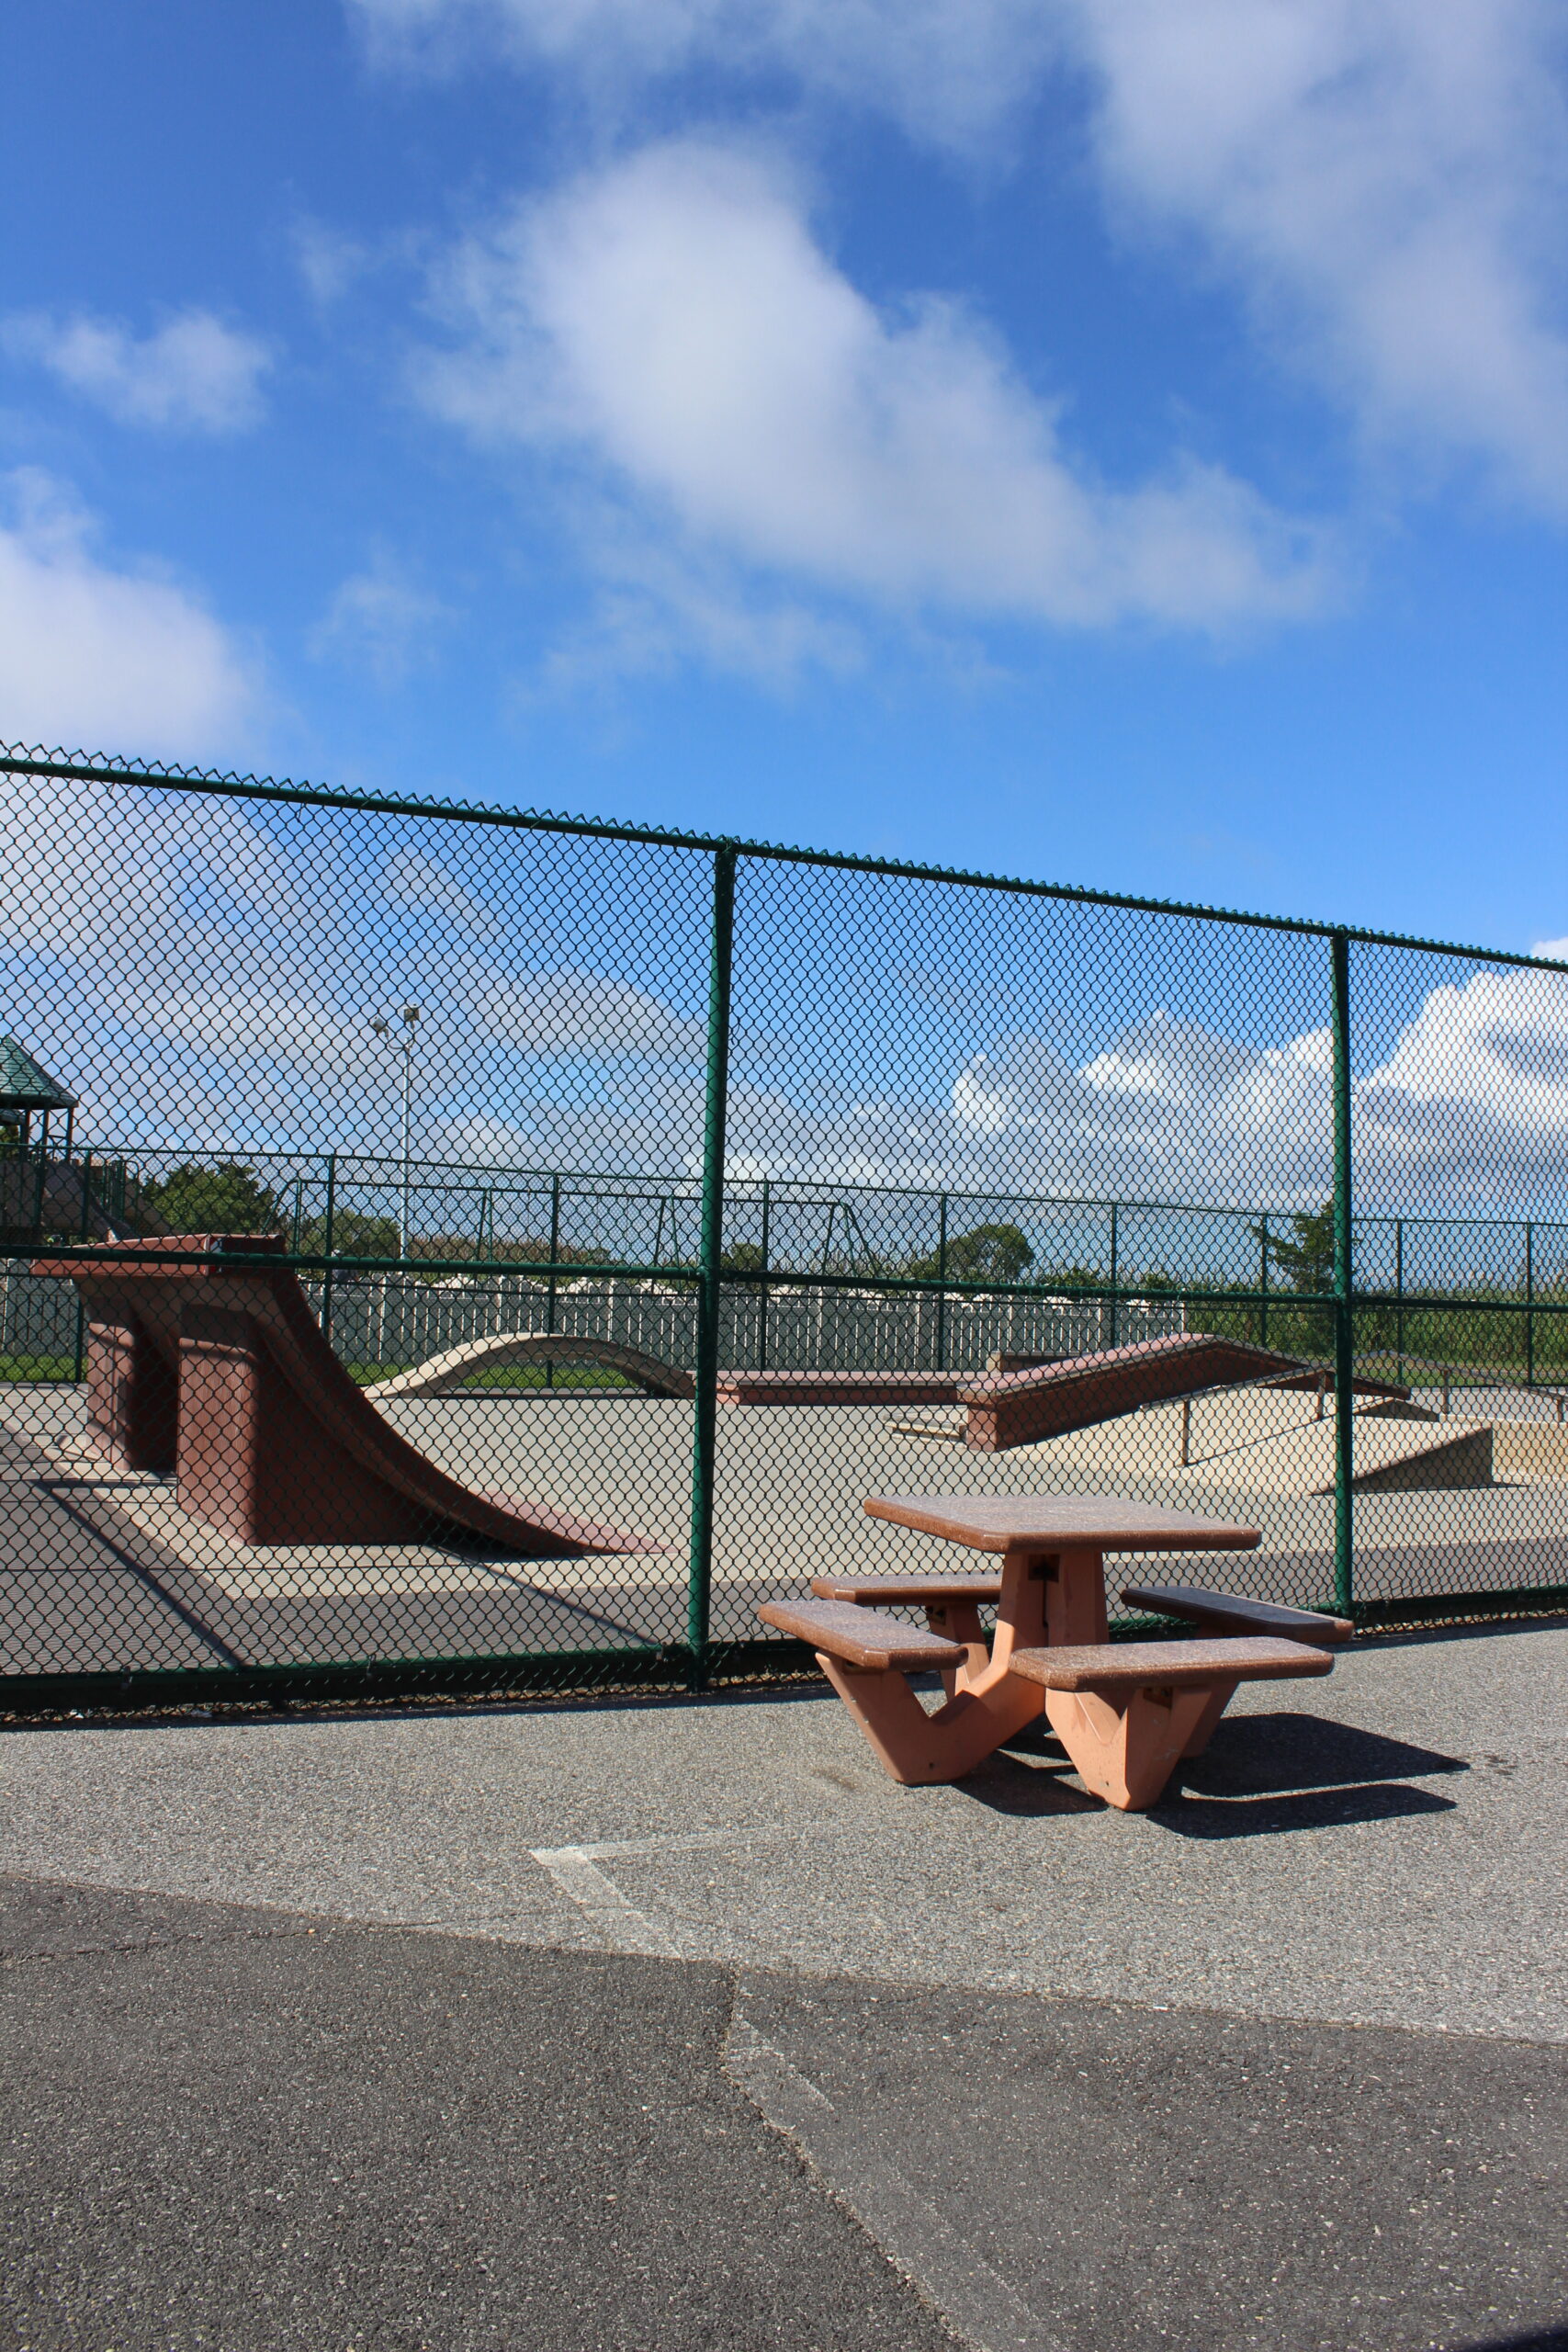 Dealy Field in Sea Isle City NJ - Extra - Skateboard Park TALL image